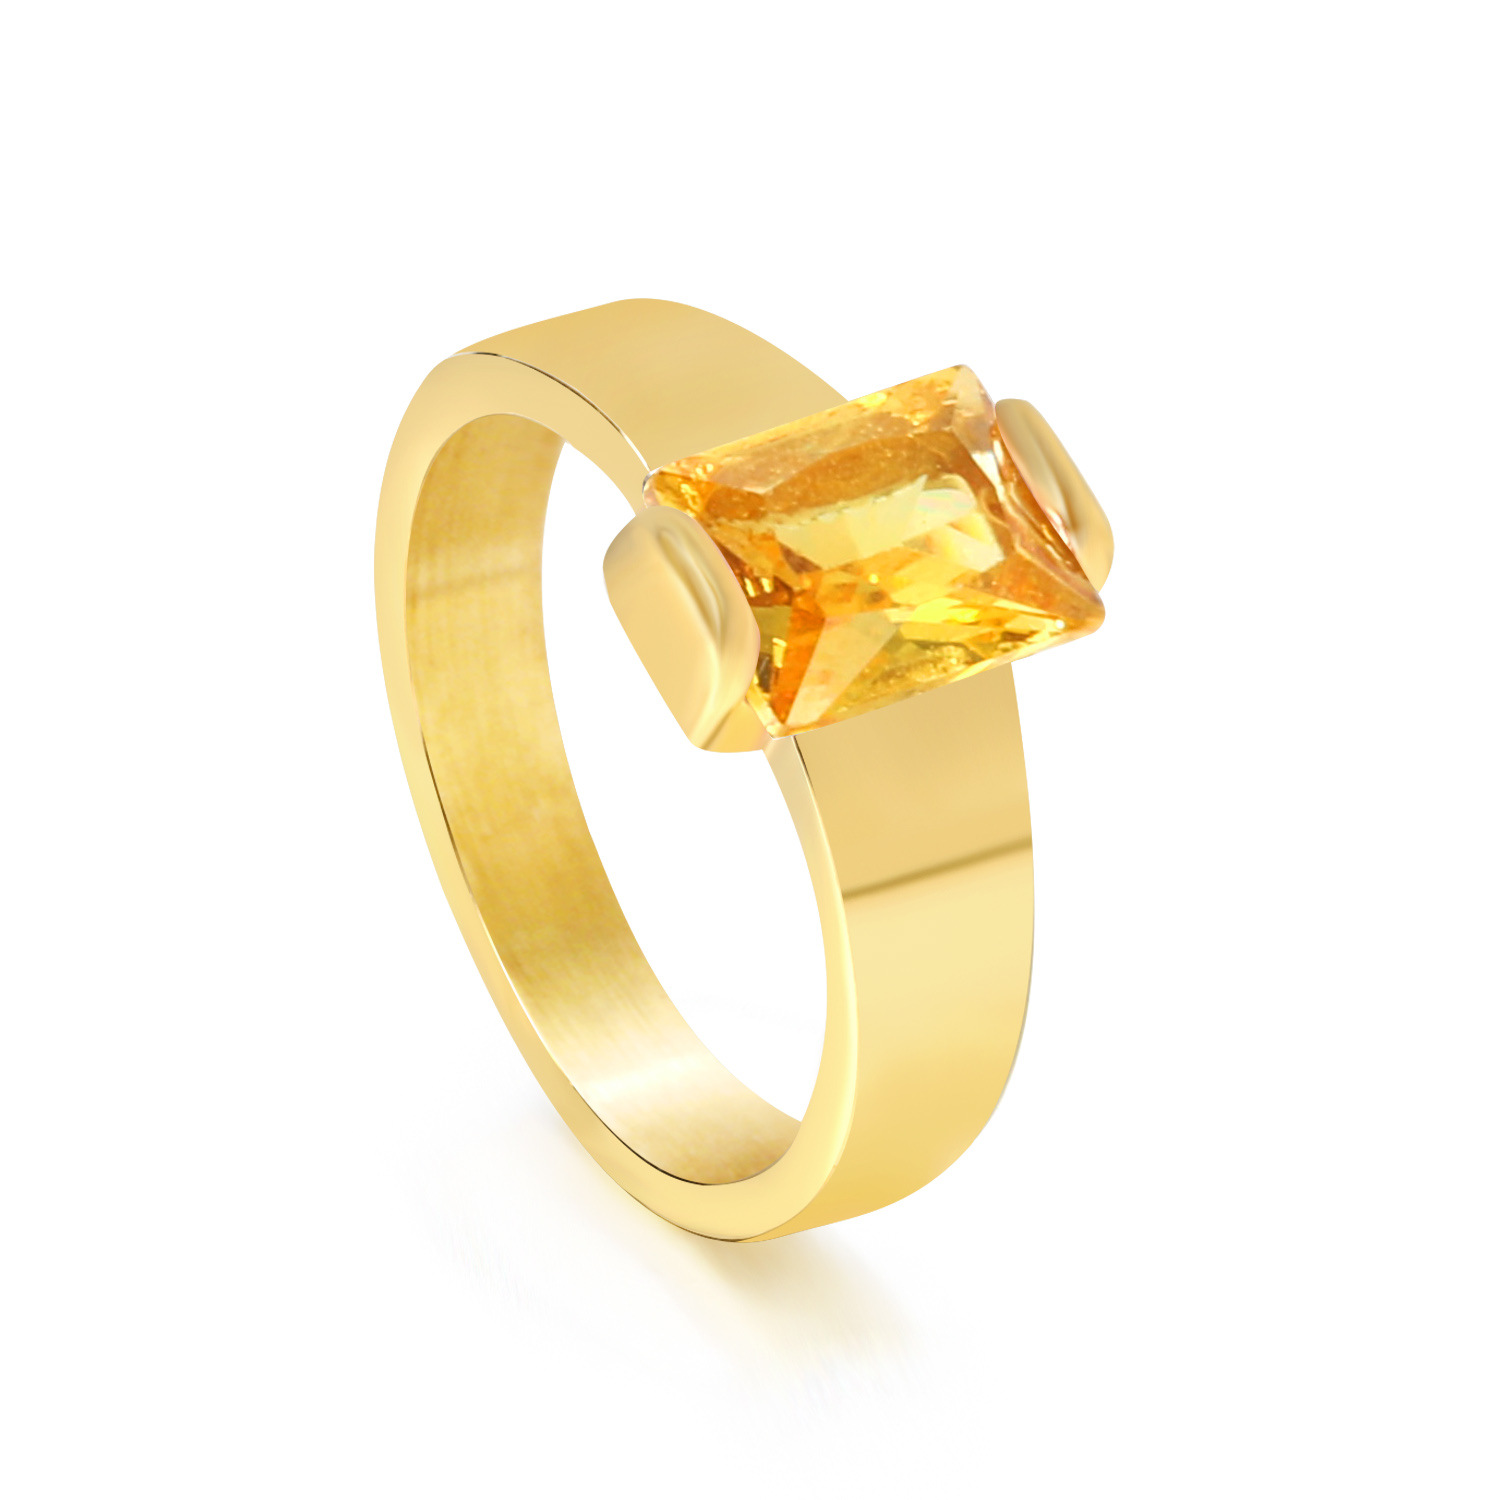 6:Yellow diamond ring Gold RI1455Y6-9G